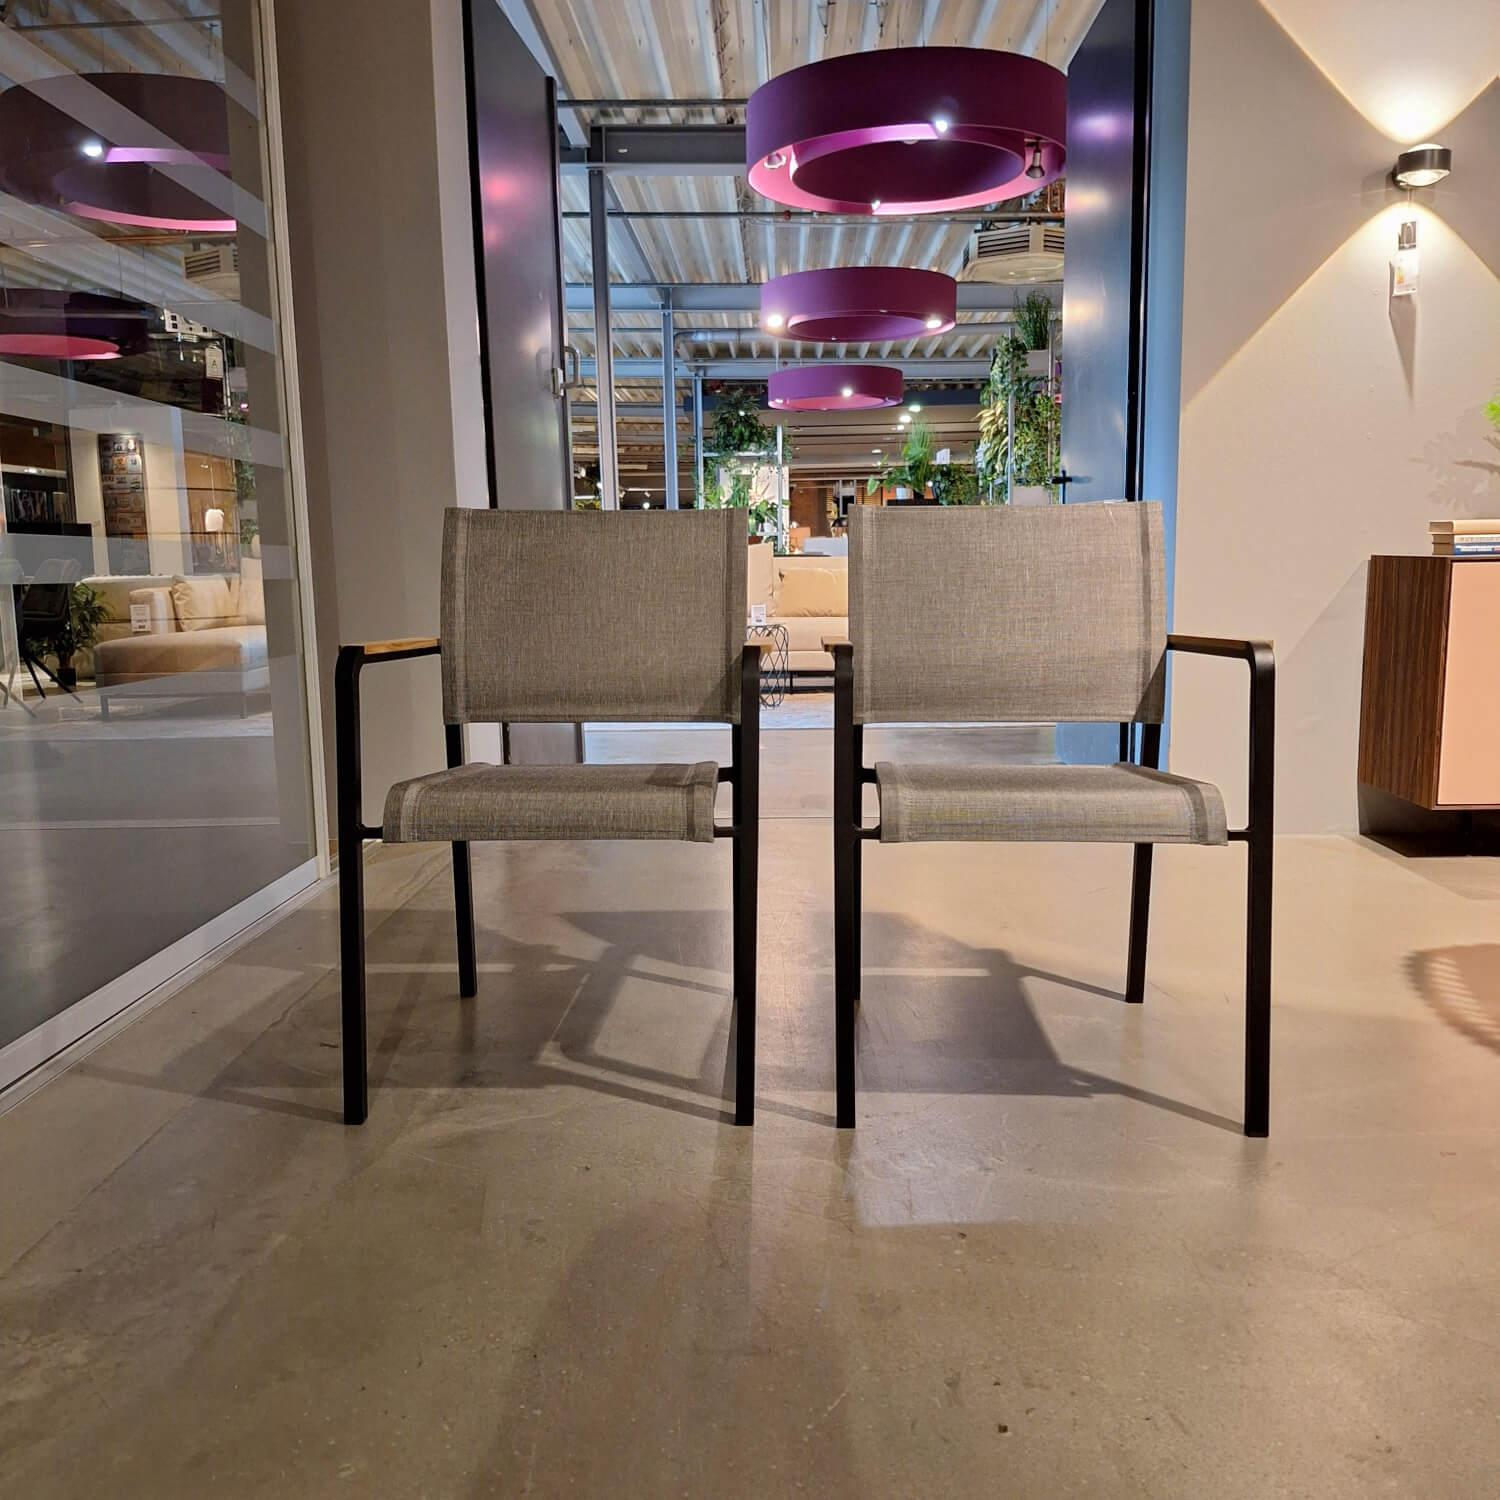 4er-Set Stuhl Outdoor Tilo Bezug Leinen Teakarmlehnen Grau Gestell Aluminium Schwarz Matt